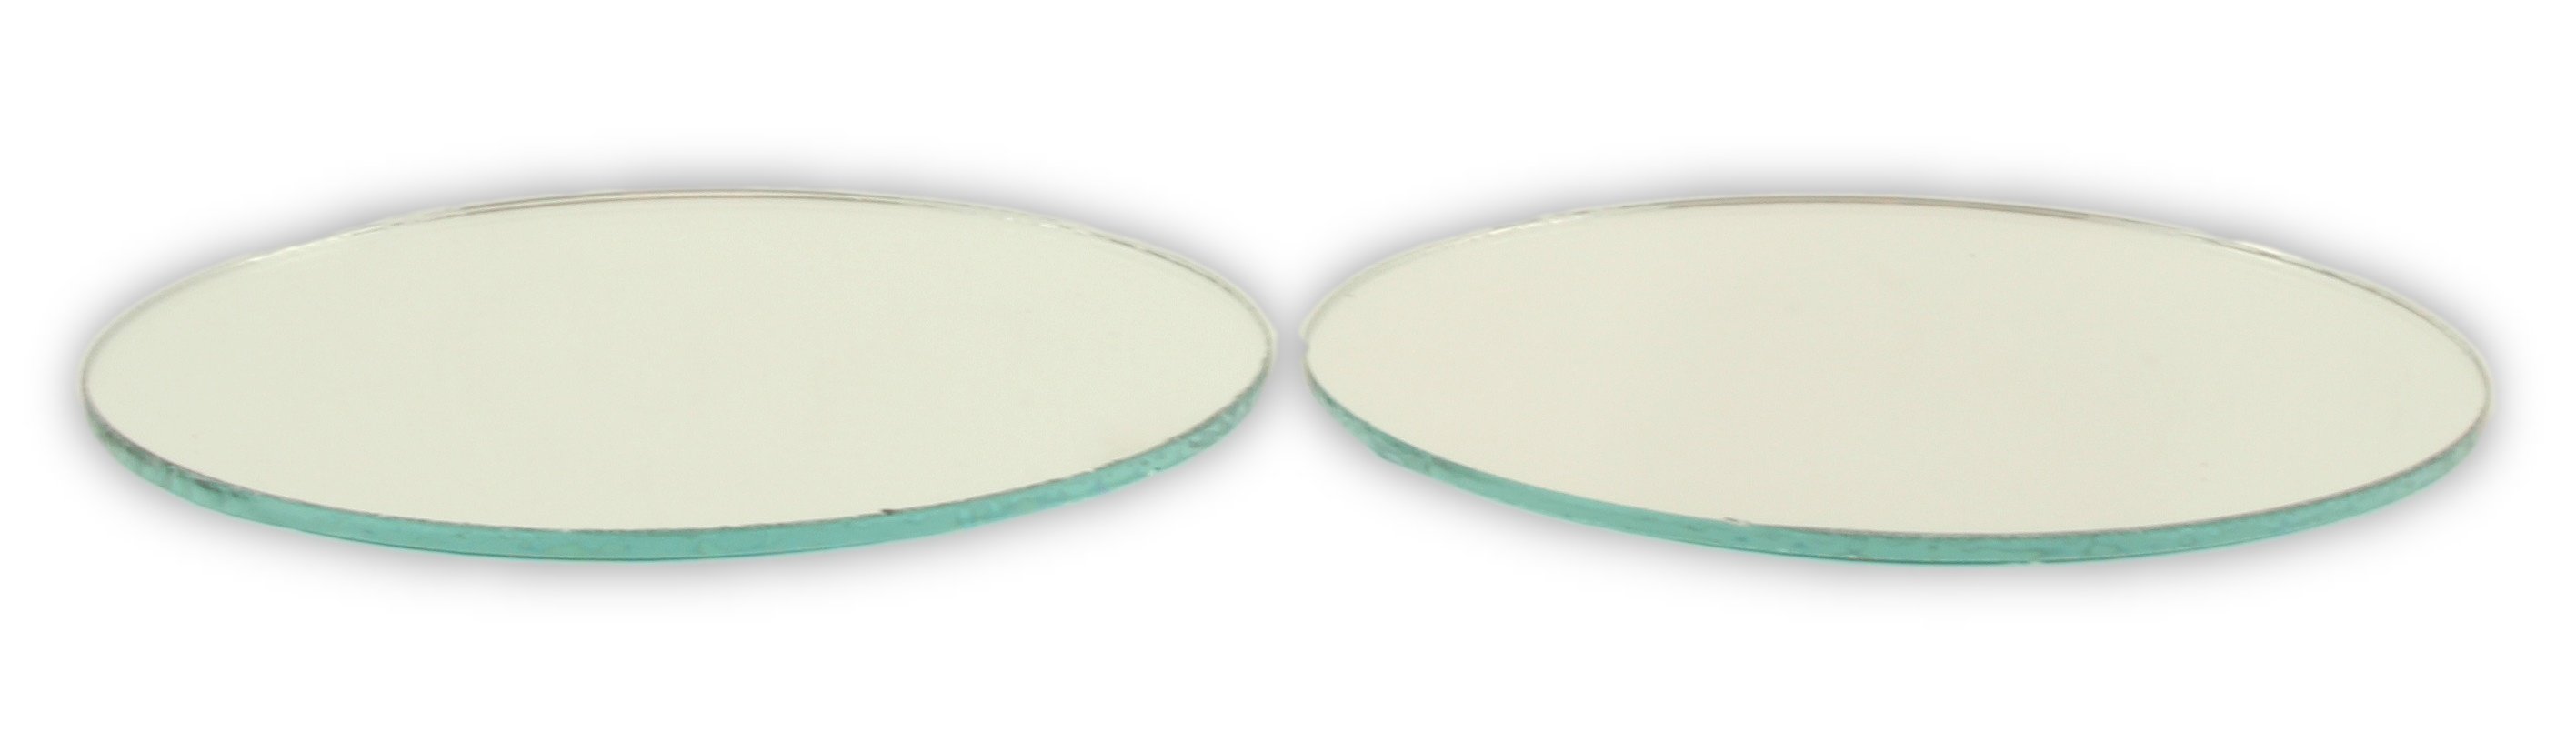 Glass Craft Mirrors - Round Mirrors, 3 diameter, Pkg of 10